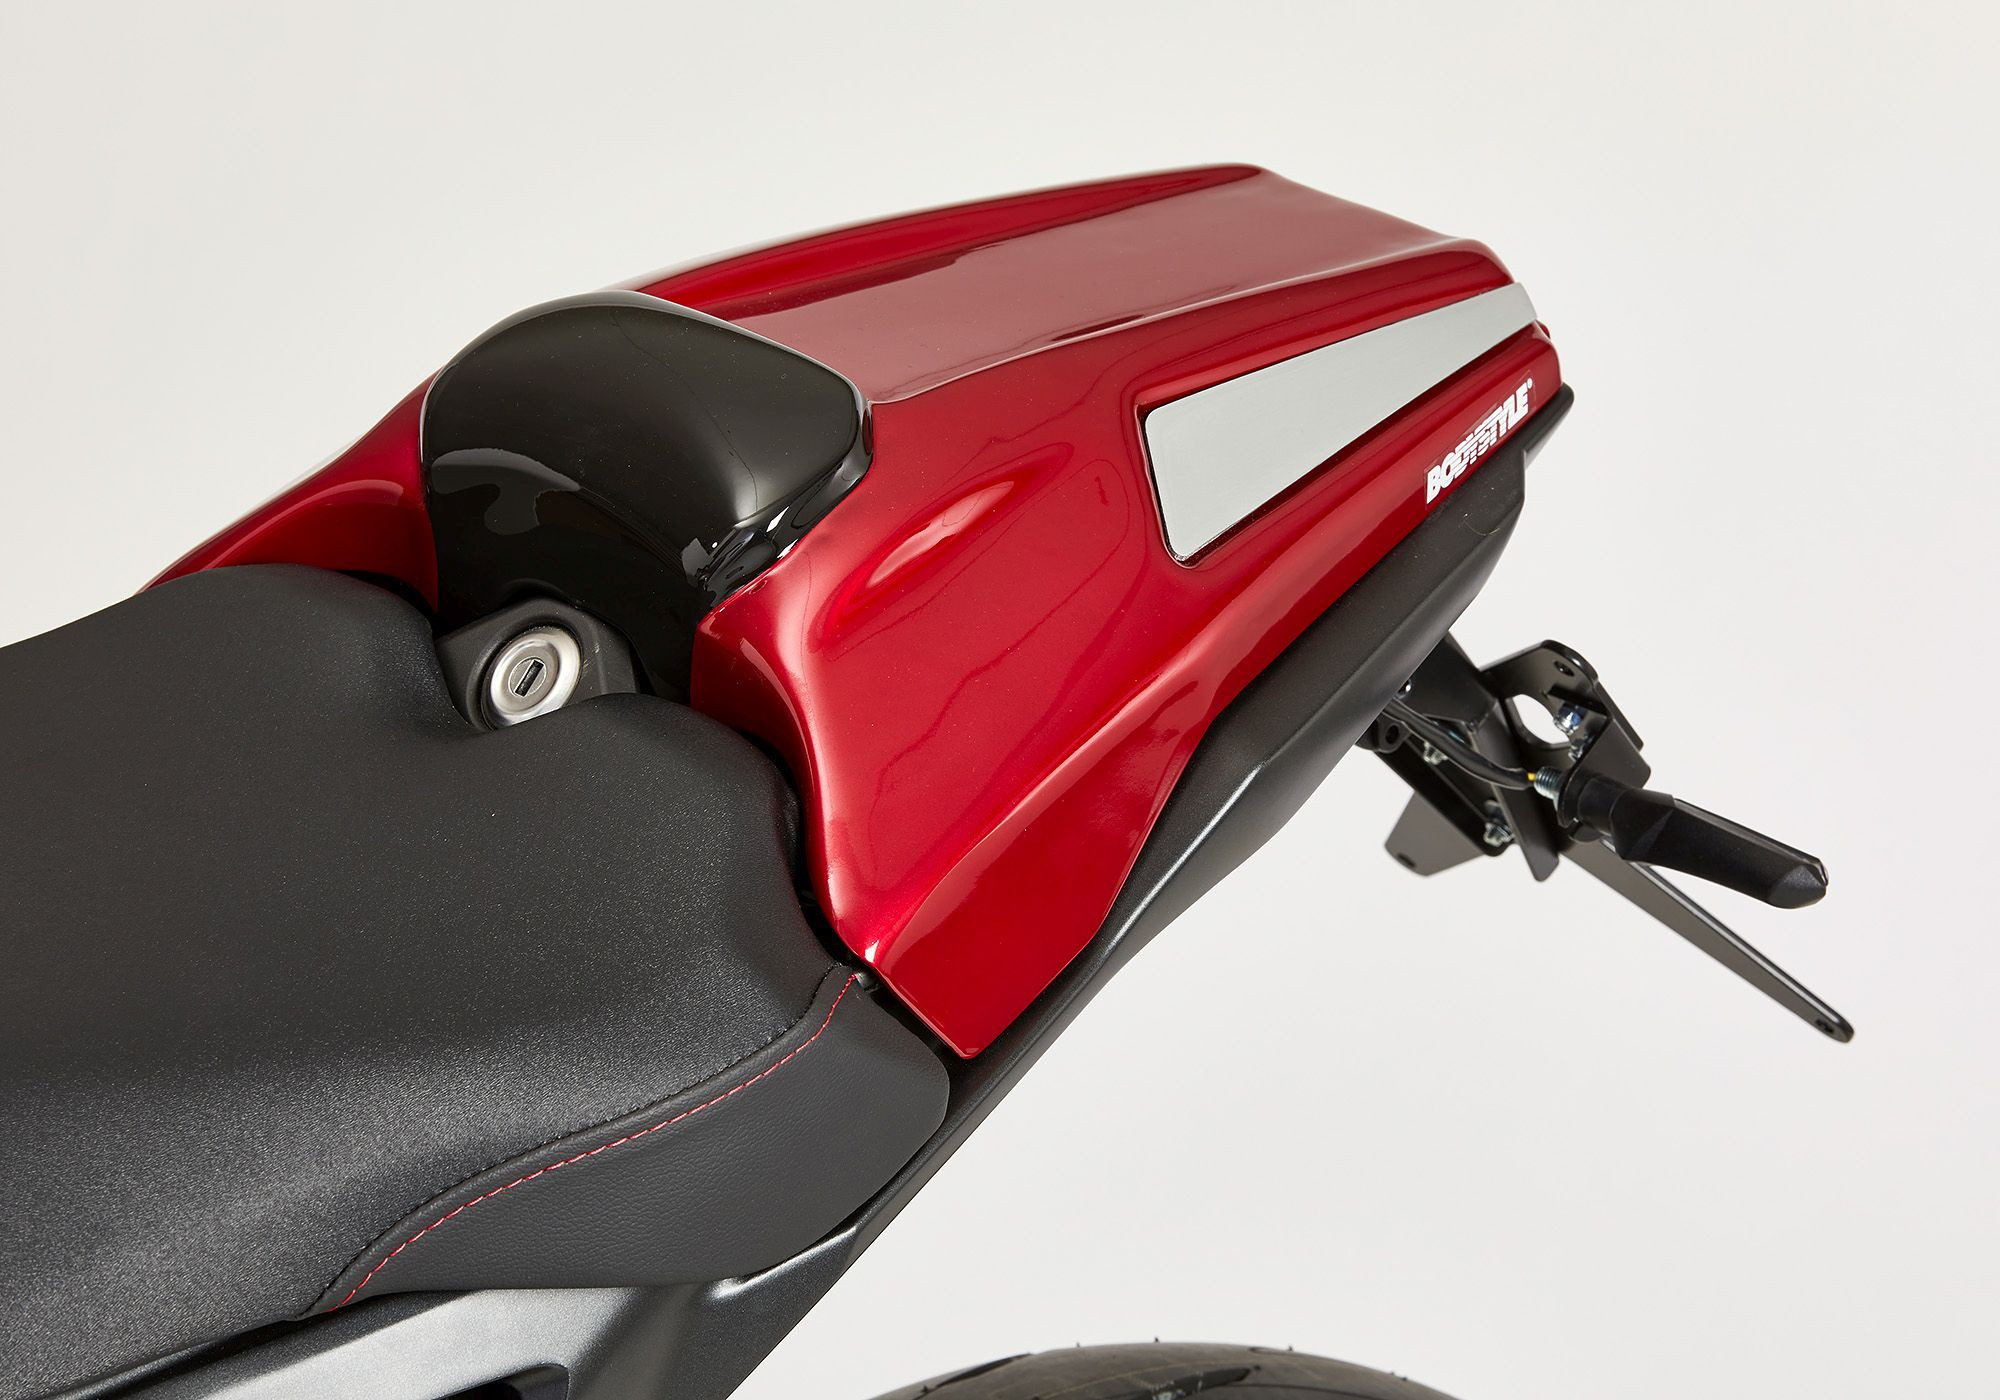 BODYSTYLE Sportsline Sitzkeil rot/schwarz Candy Chromosphere Red, R381C/Mat Gunpowder Black Metallic passt für Honda CB1000R 2018-2020